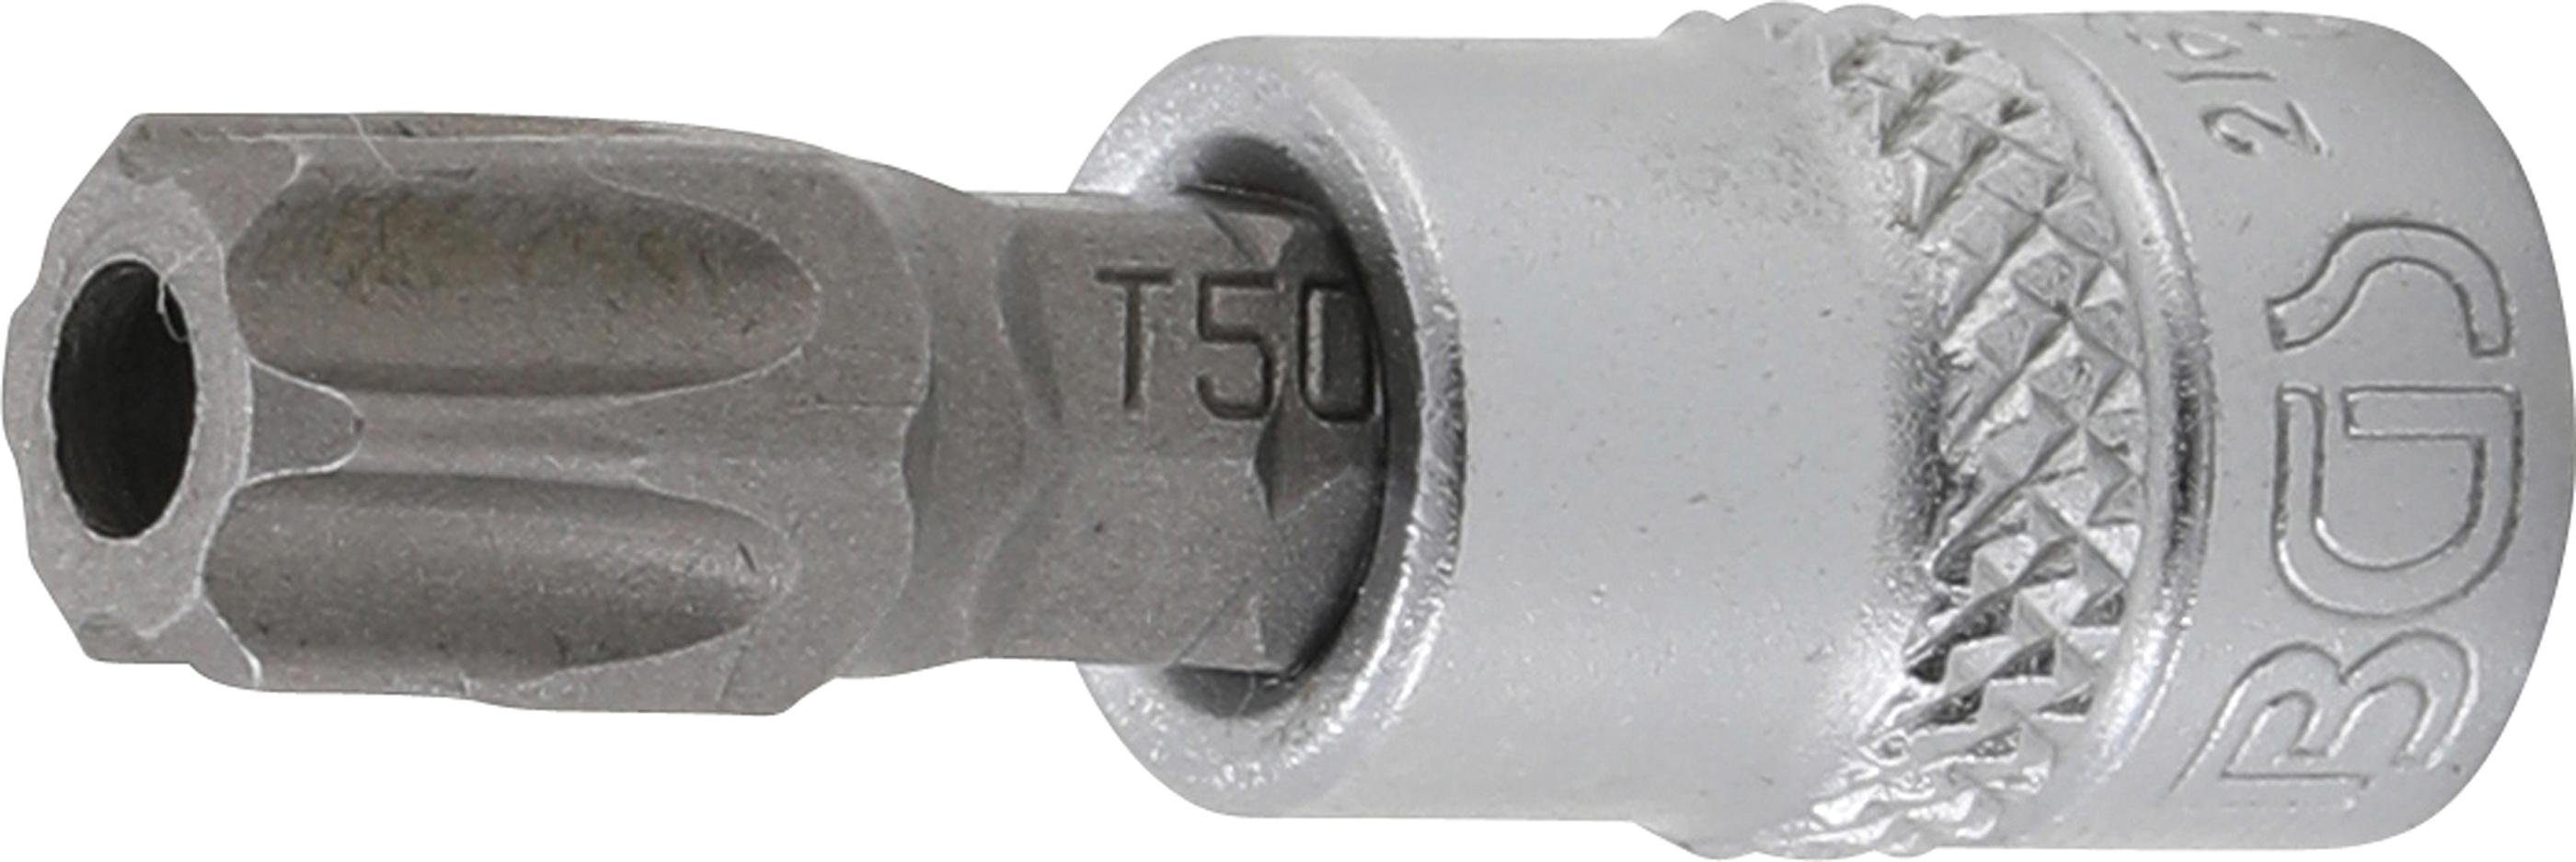 BGS technic Bit-Schraubendreher Bit-Einsatz, Antrieb Innenvierkant 6,3 mm (1/4), T-Profil (für Torx) mit Bohrung T50